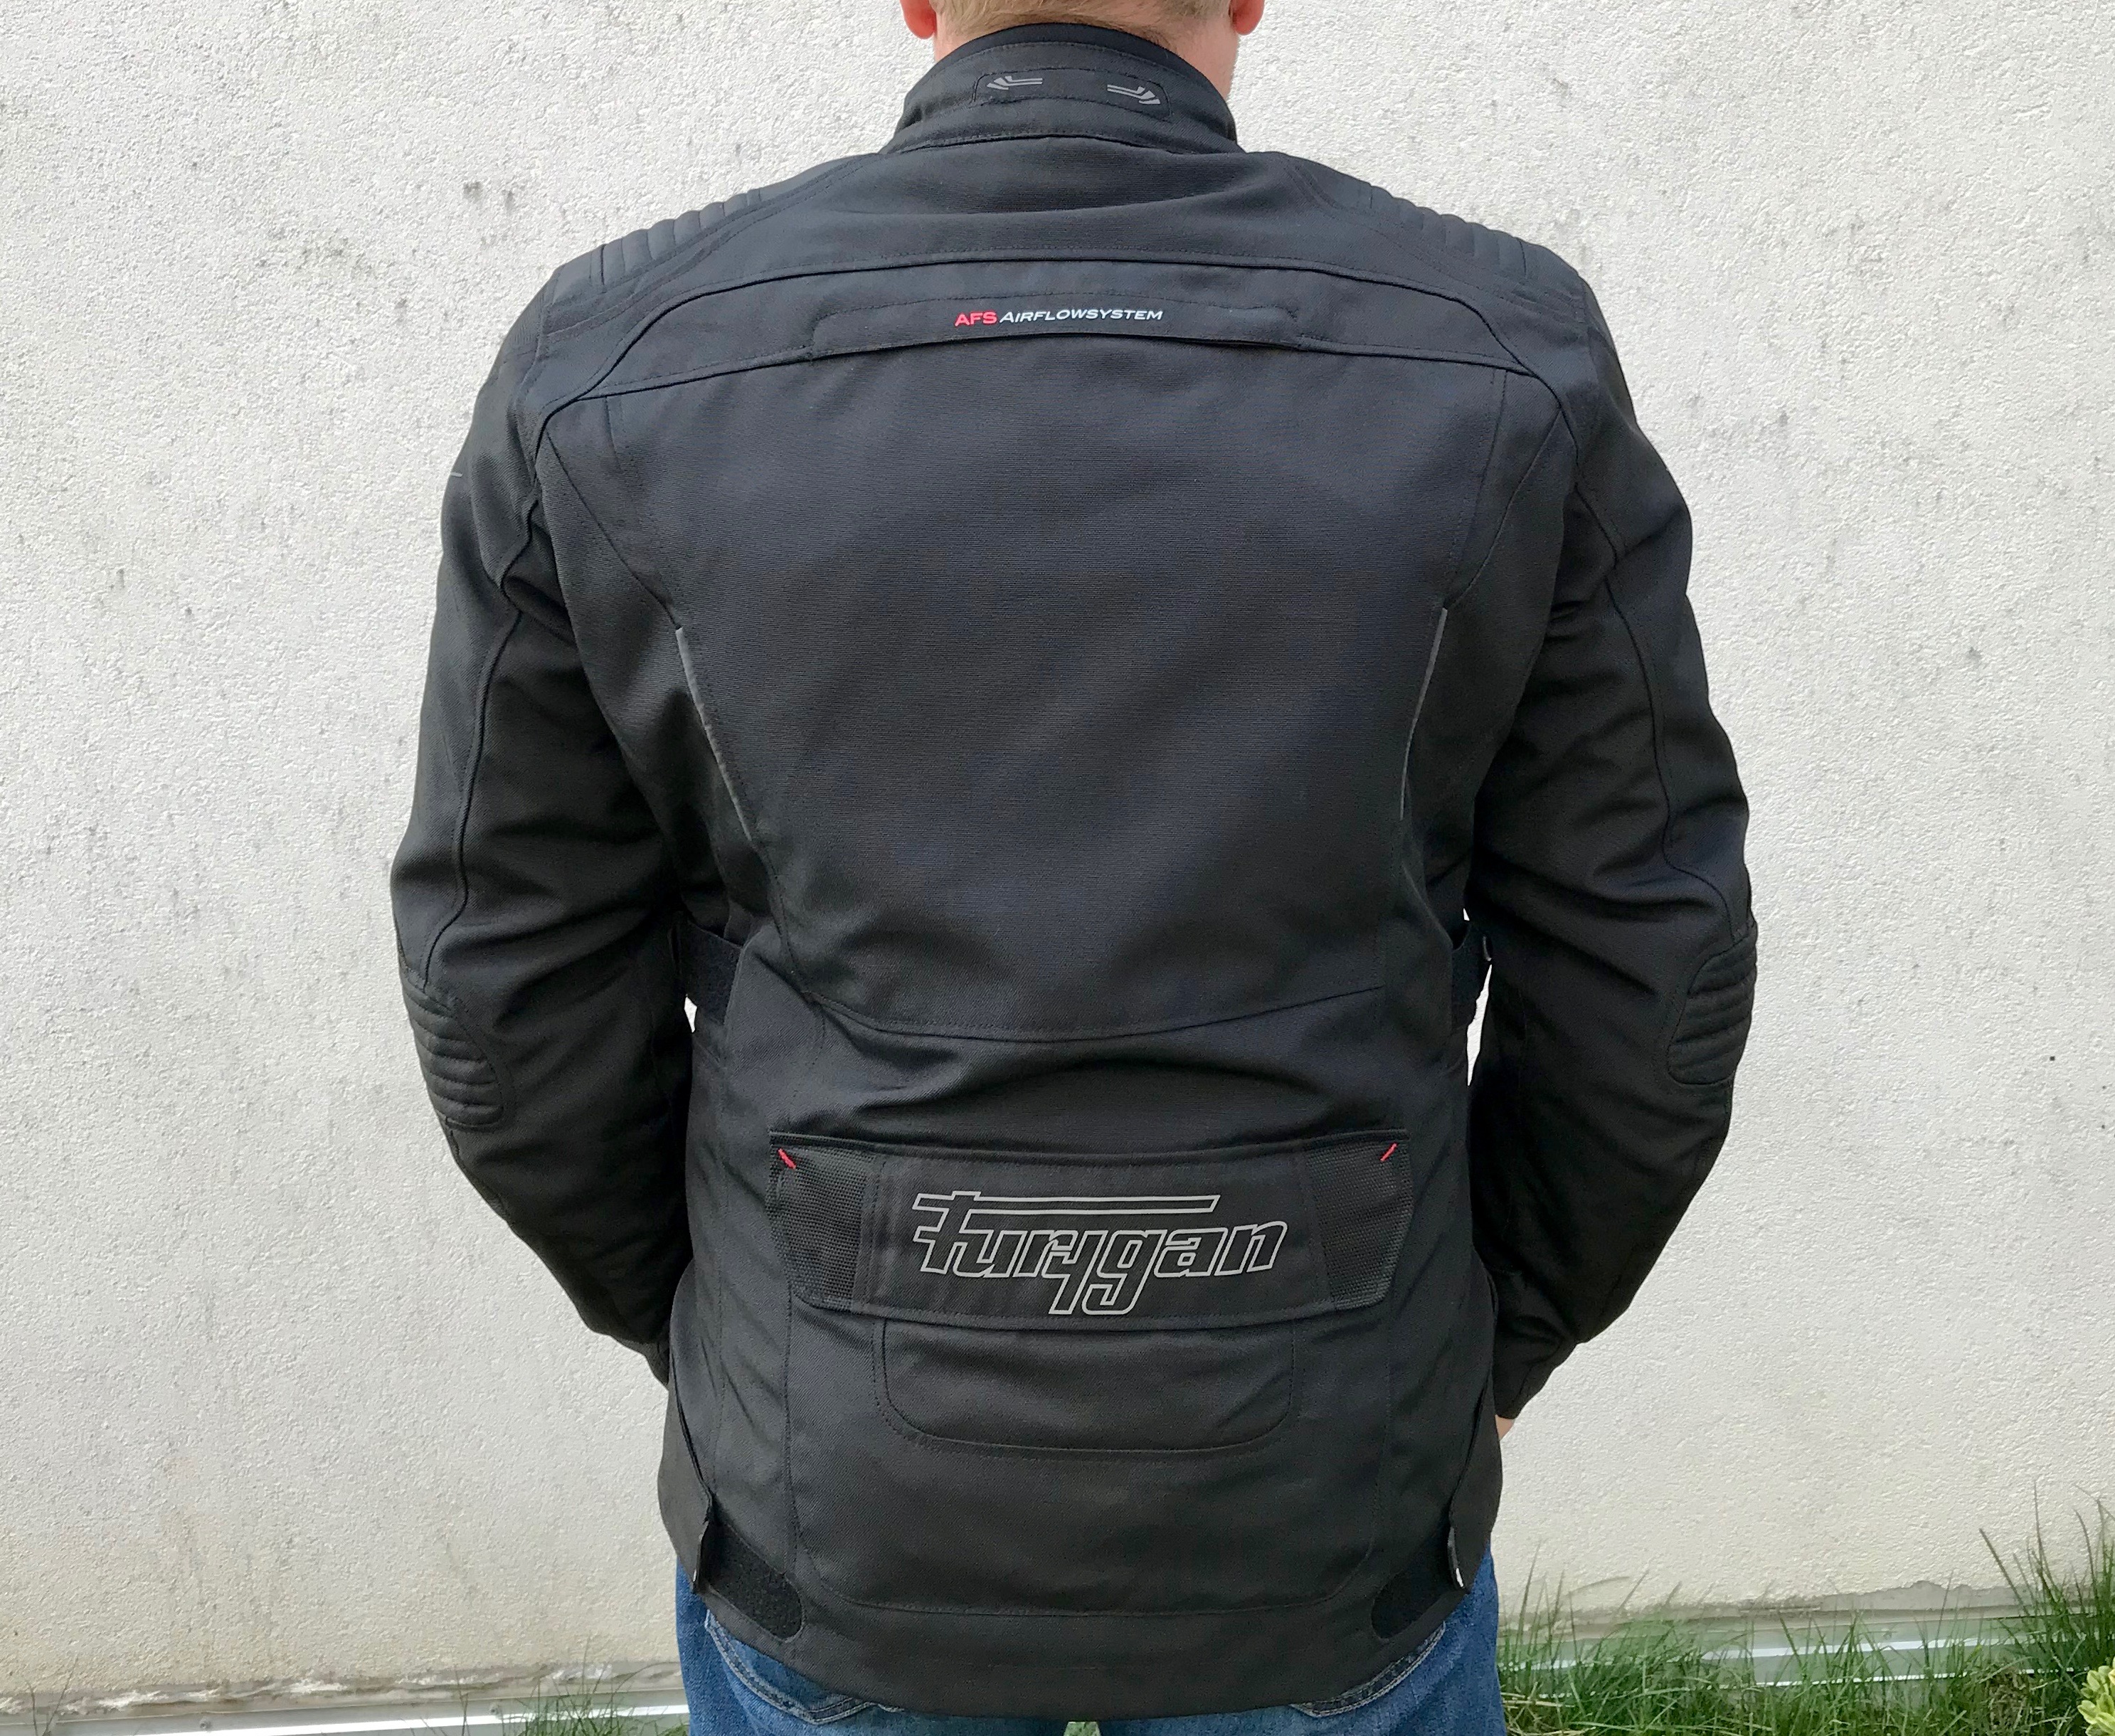 La chaqueta Bronco Furygan está equipado con unas inserciones pequeña retrorreflectantes